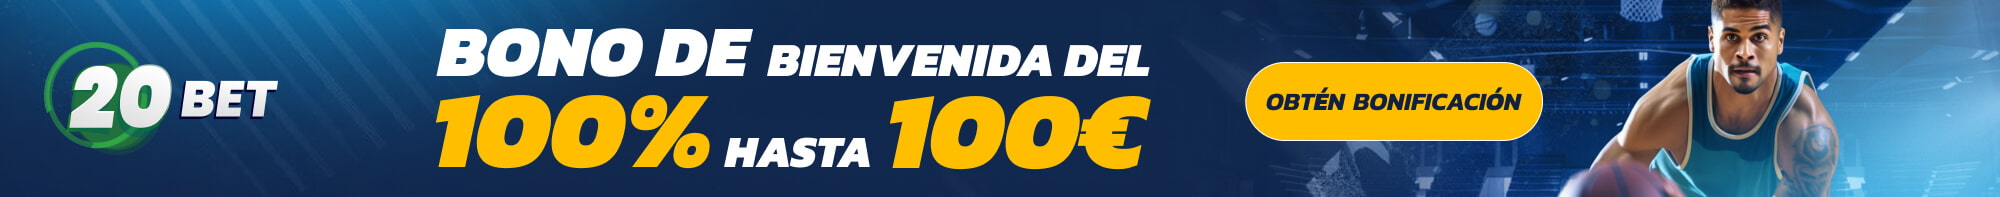 20Bet Bono De bienvendia del 100% hasta 100EUR